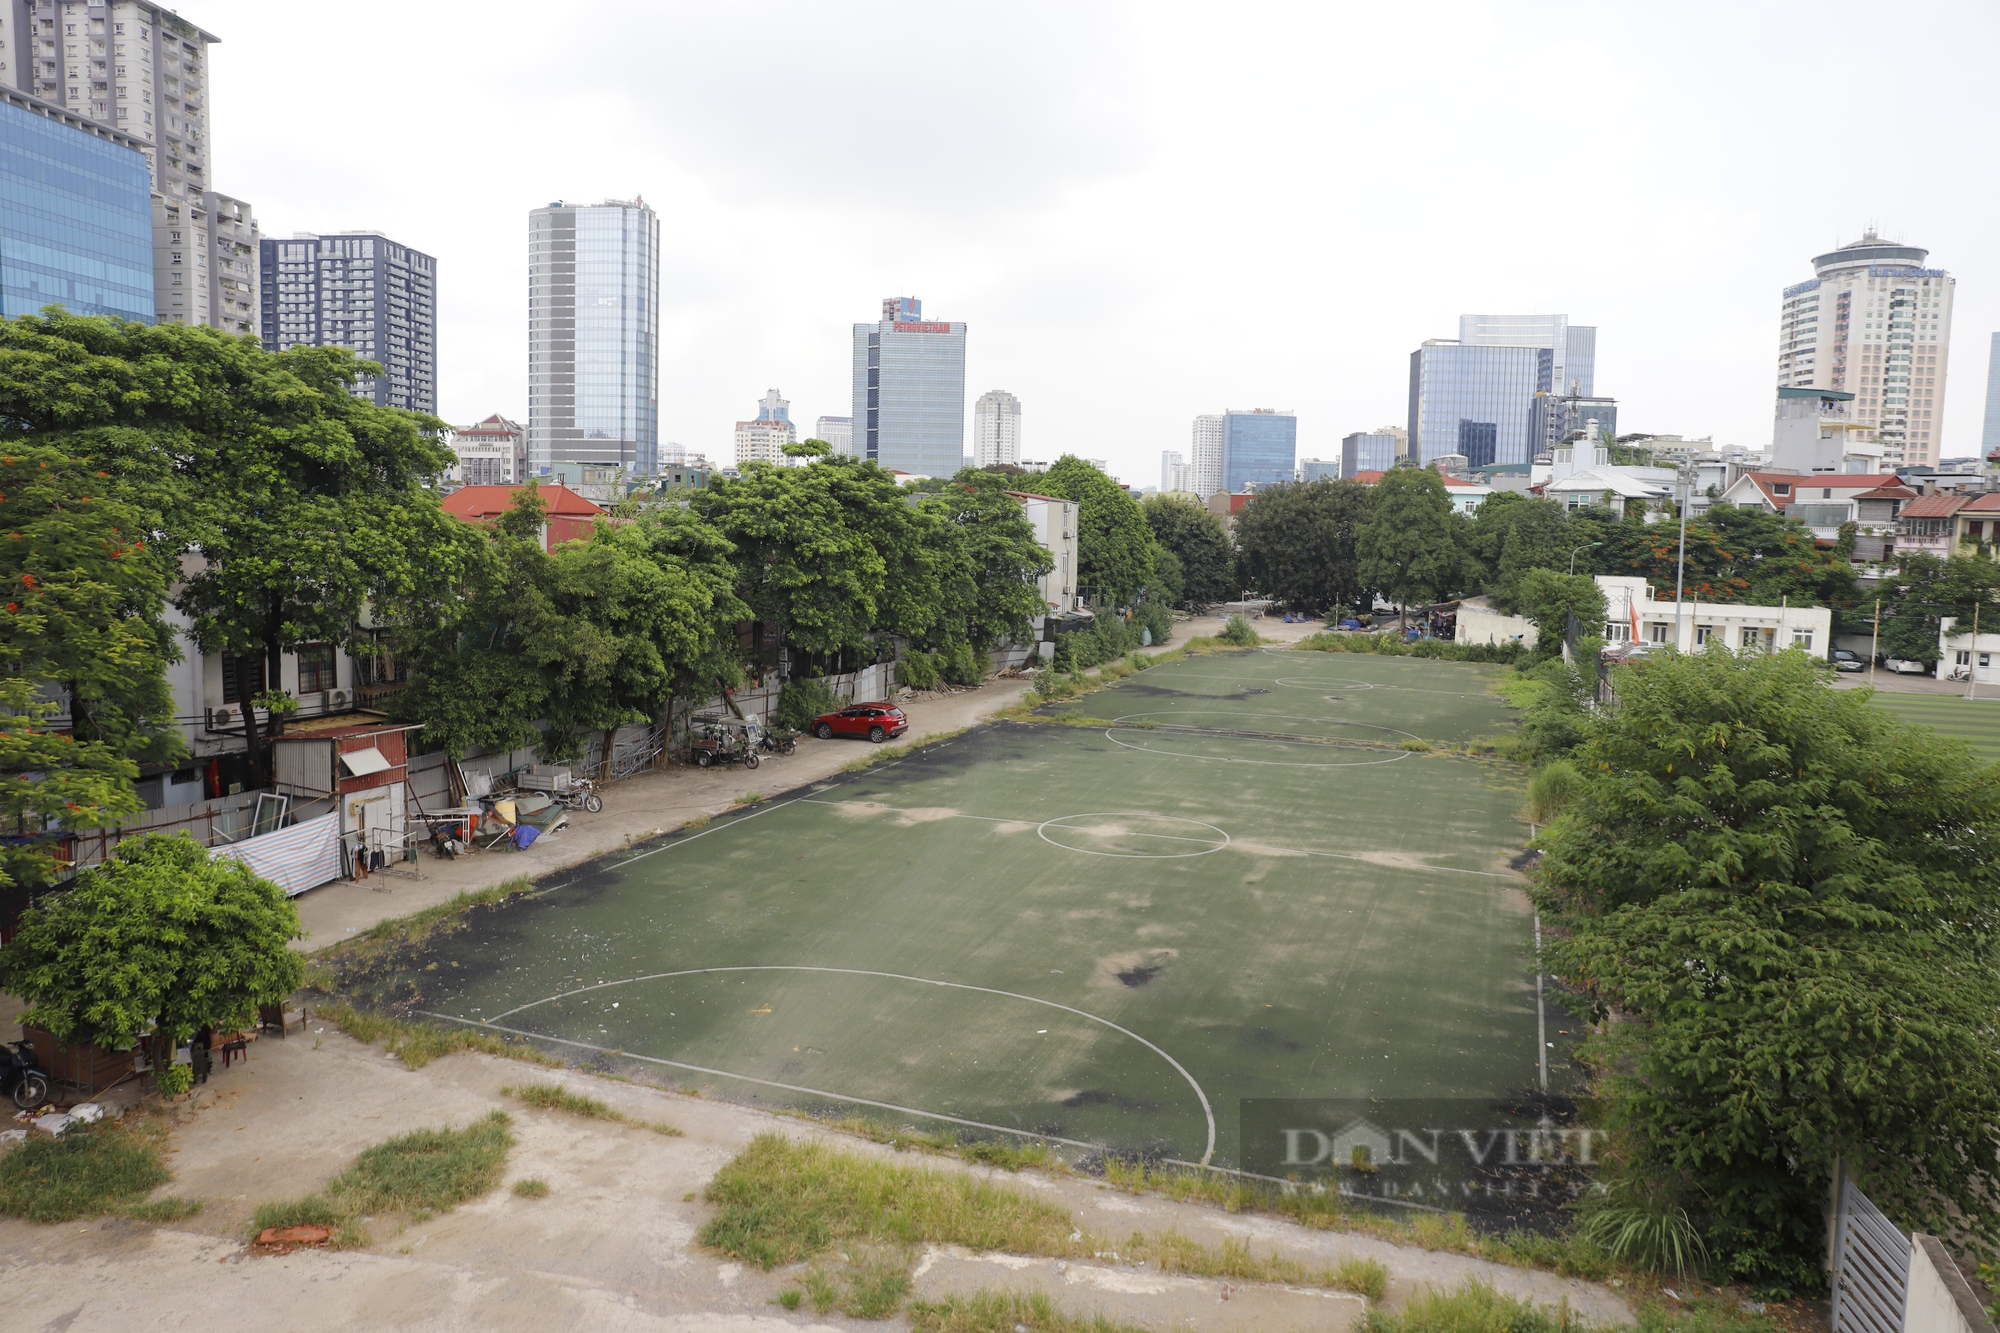 Dự án công viên văn hóa hơn 20 năm bỗng dưng biến thành khu dân cư tại Hà Nội - Ảnh 11.